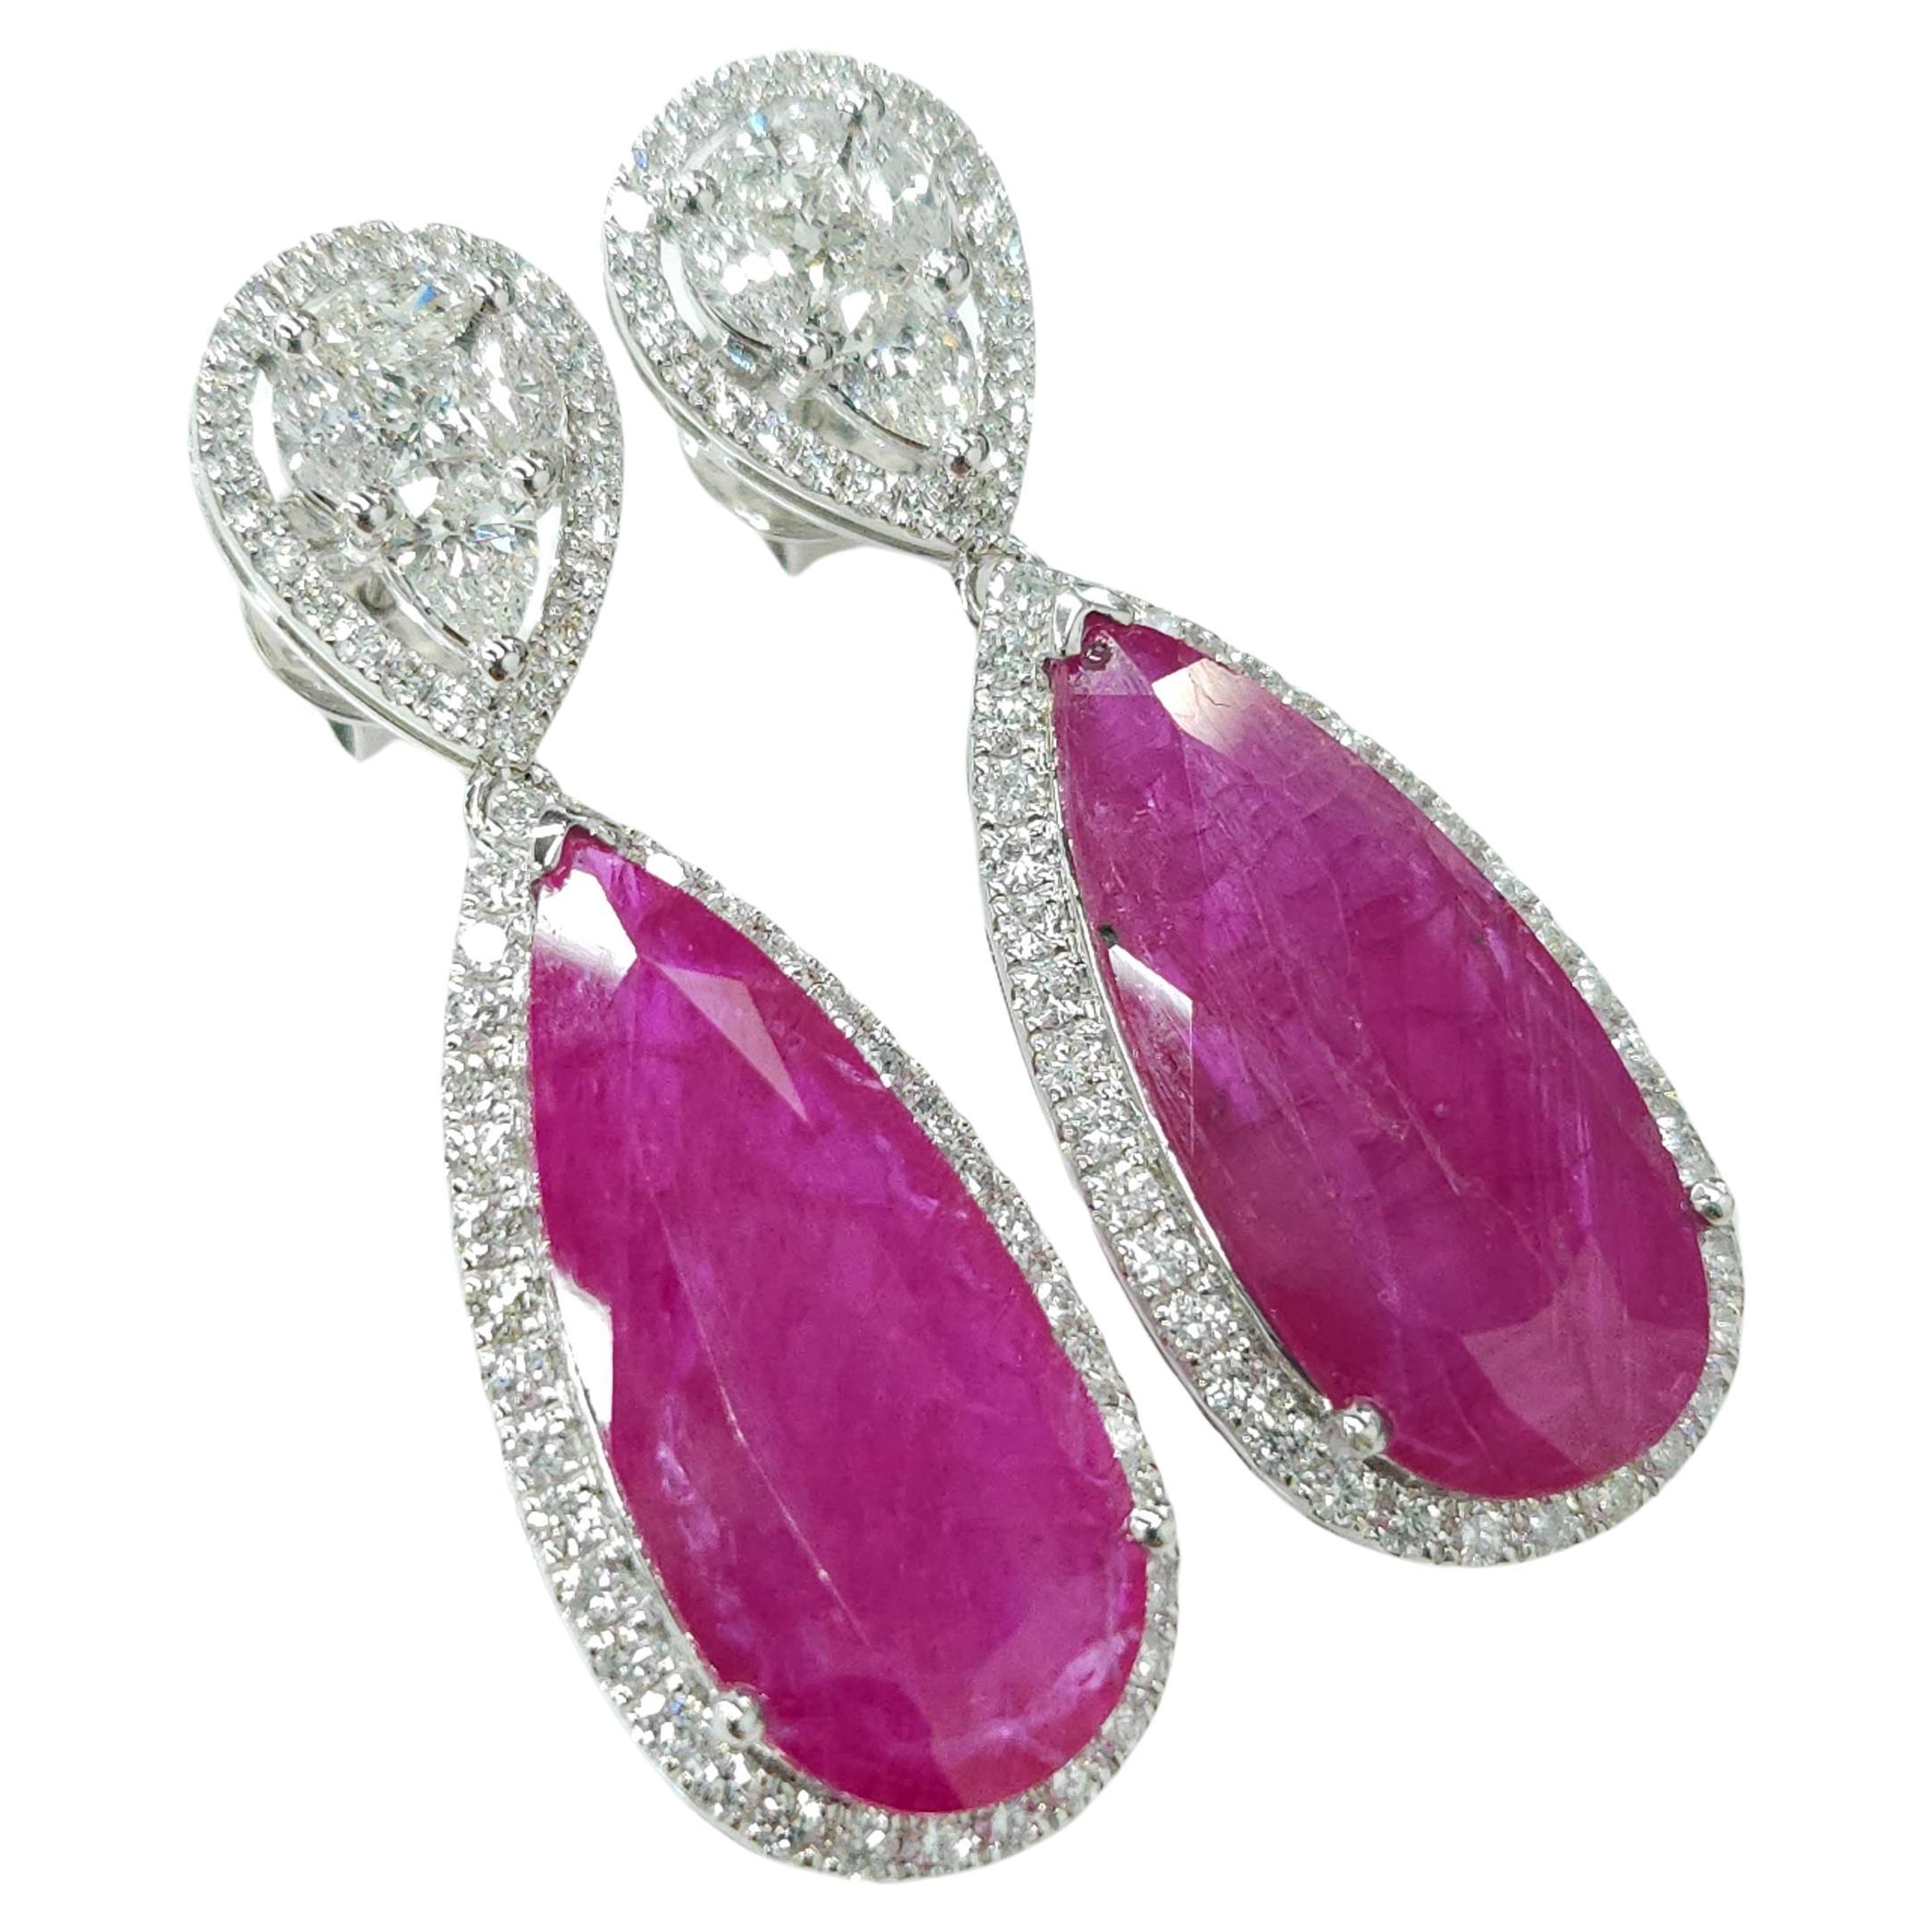 IGI Certified 18.49 Carat Burma Ruby &Diamond Earrings in 18K White Gold For Sale